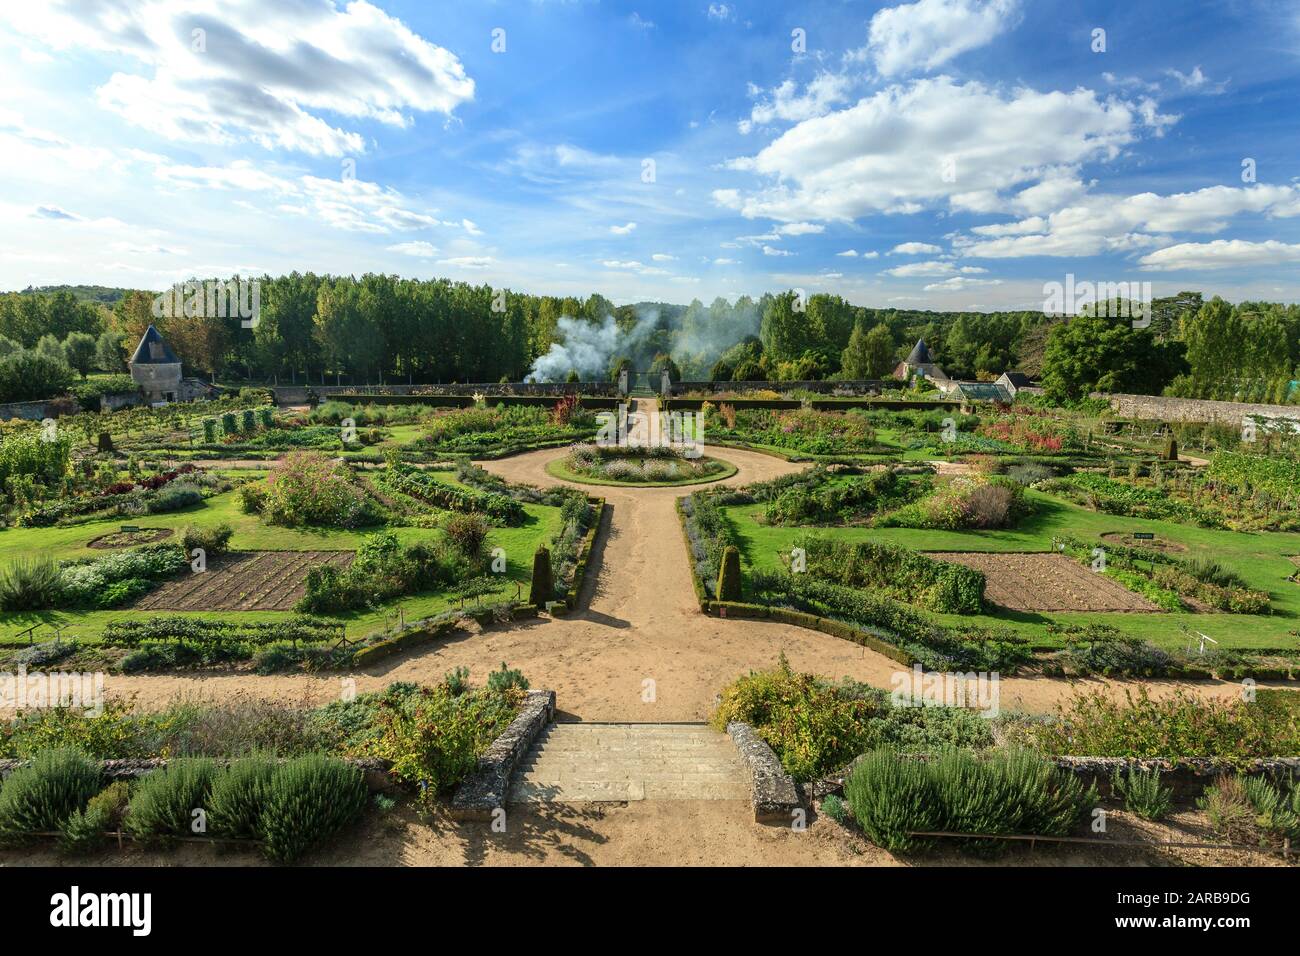 Francia, Indre et Loire, Chancay, Chateau de Valmer giardini, l'orto visto dalla Terrazza di Leda (menzione obbligatoria Chateau de Valmer) Foto Stock